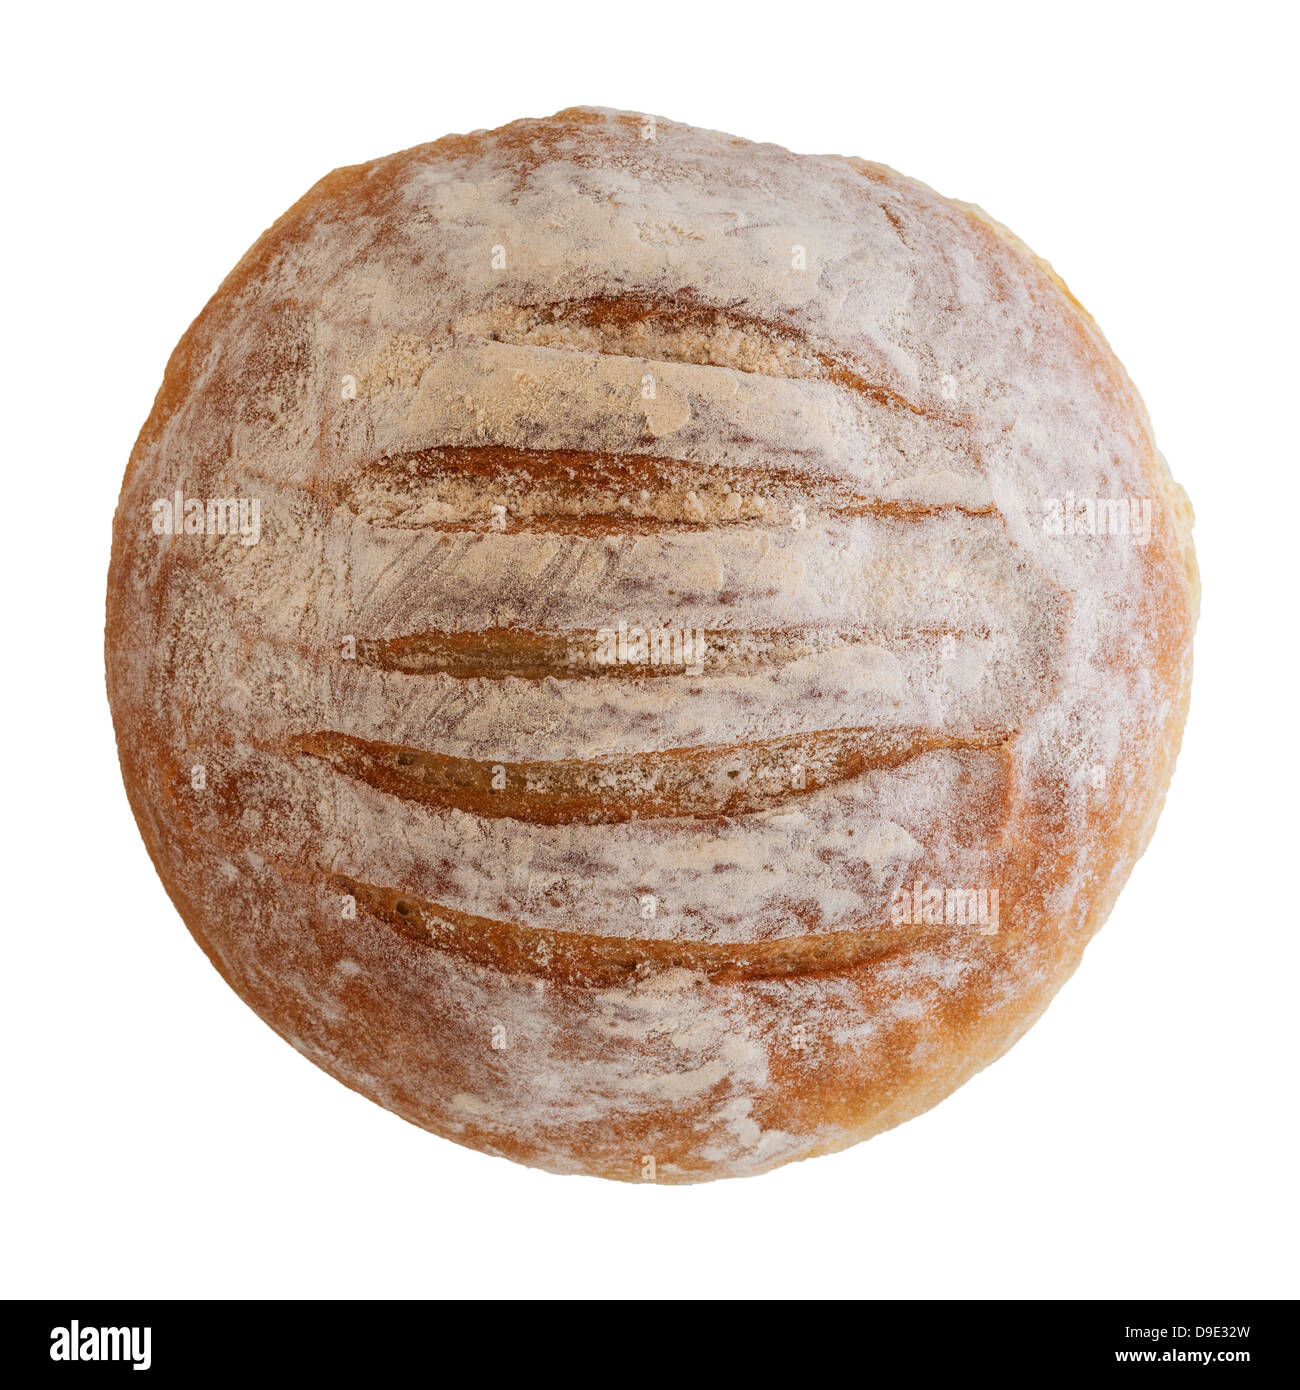 Un petit pain blanc ferme sur un fond blanc Banque D'Images